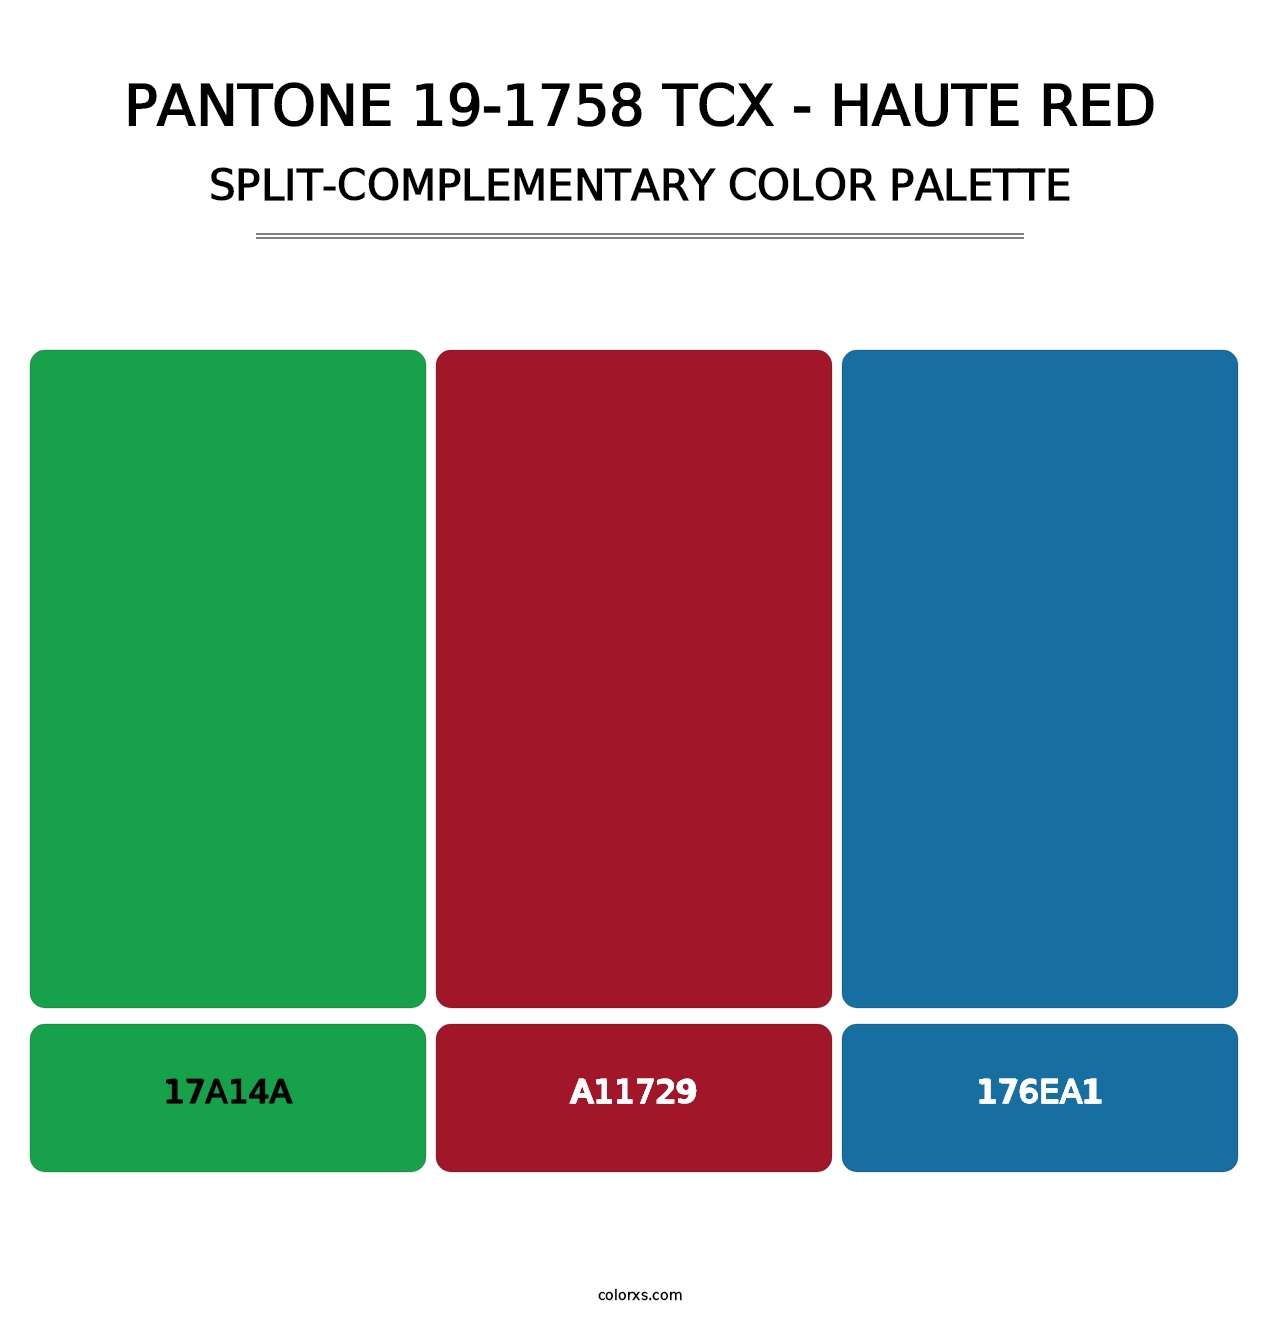 PANTONE 19-1758 TCX - Haute Red - Split-Complementary Color Palette